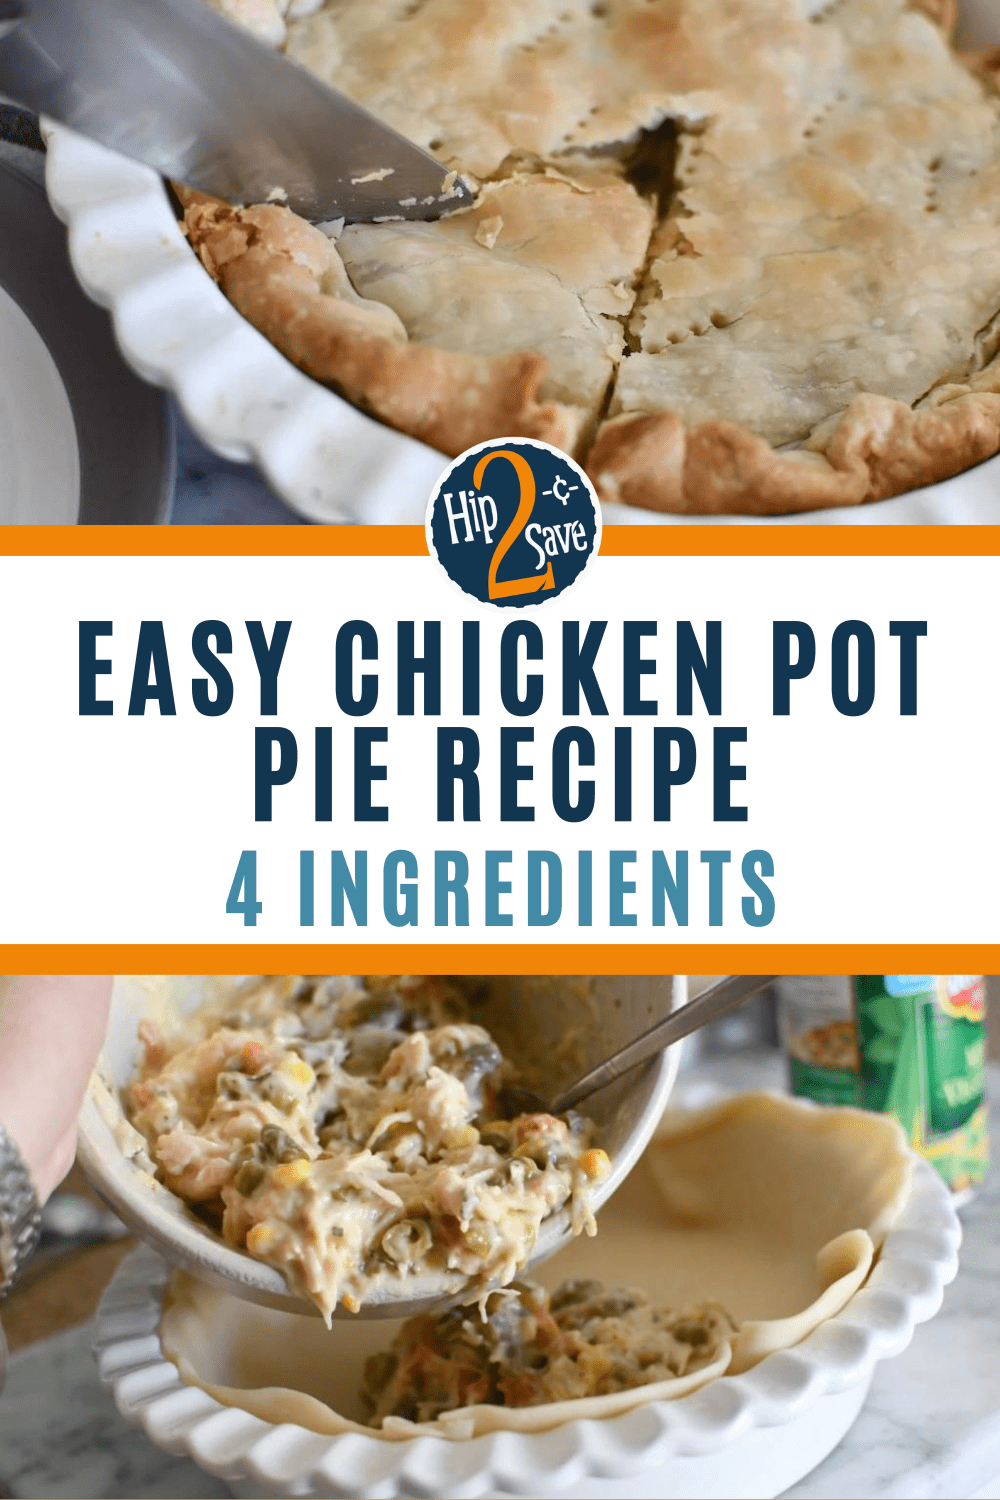 Easy Chicken Pot Pie Recipe | Cheap 4-Ingredient Dinner Idea - Hip2Save